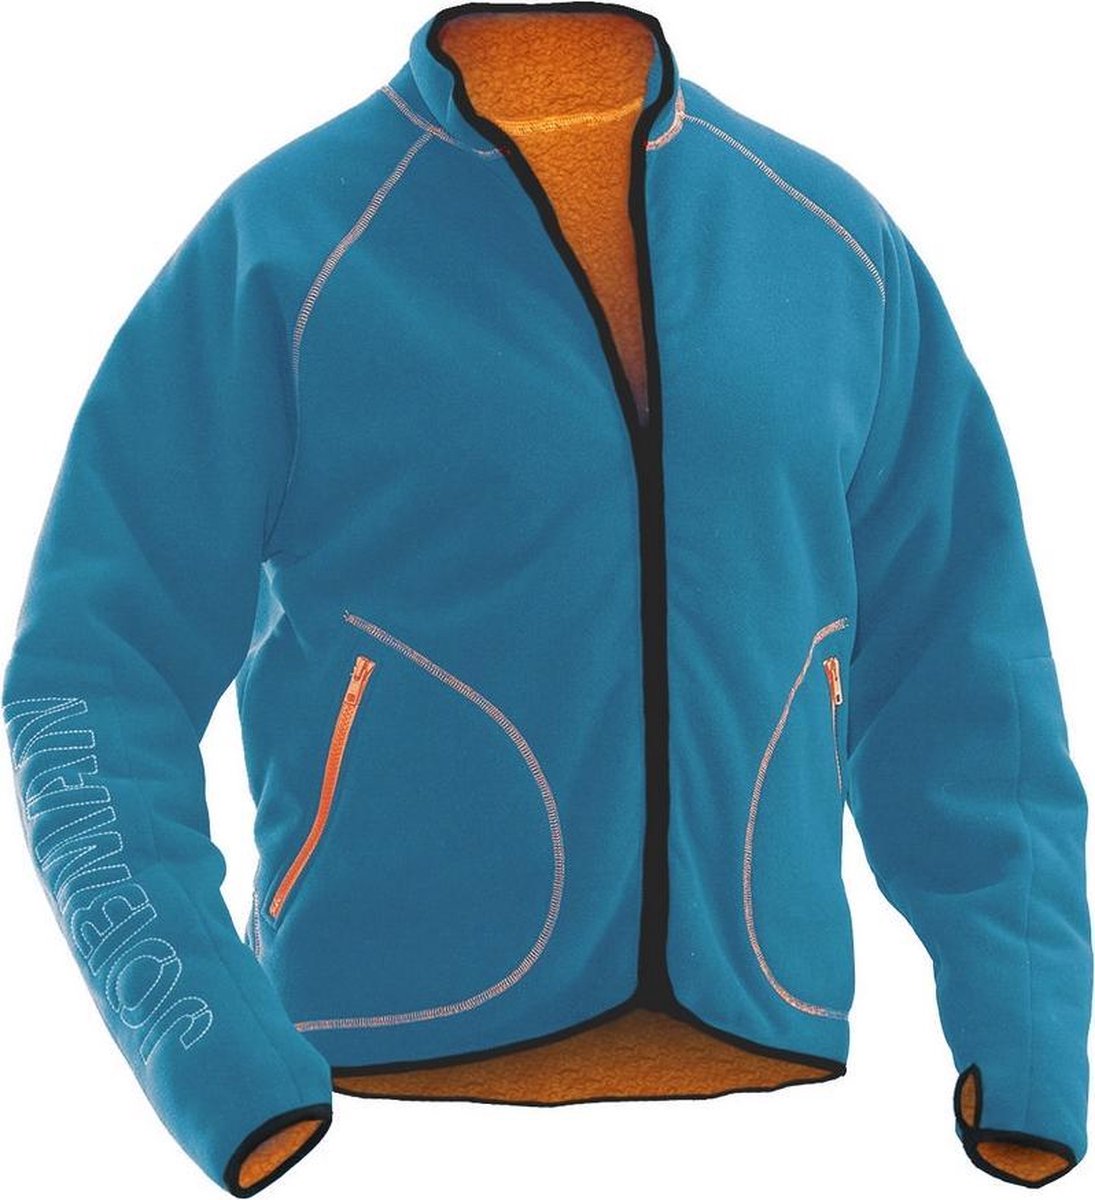 Jobman 5192 Fleece Jacket Reversible 65519274 - Oceaan/Oranje - XL